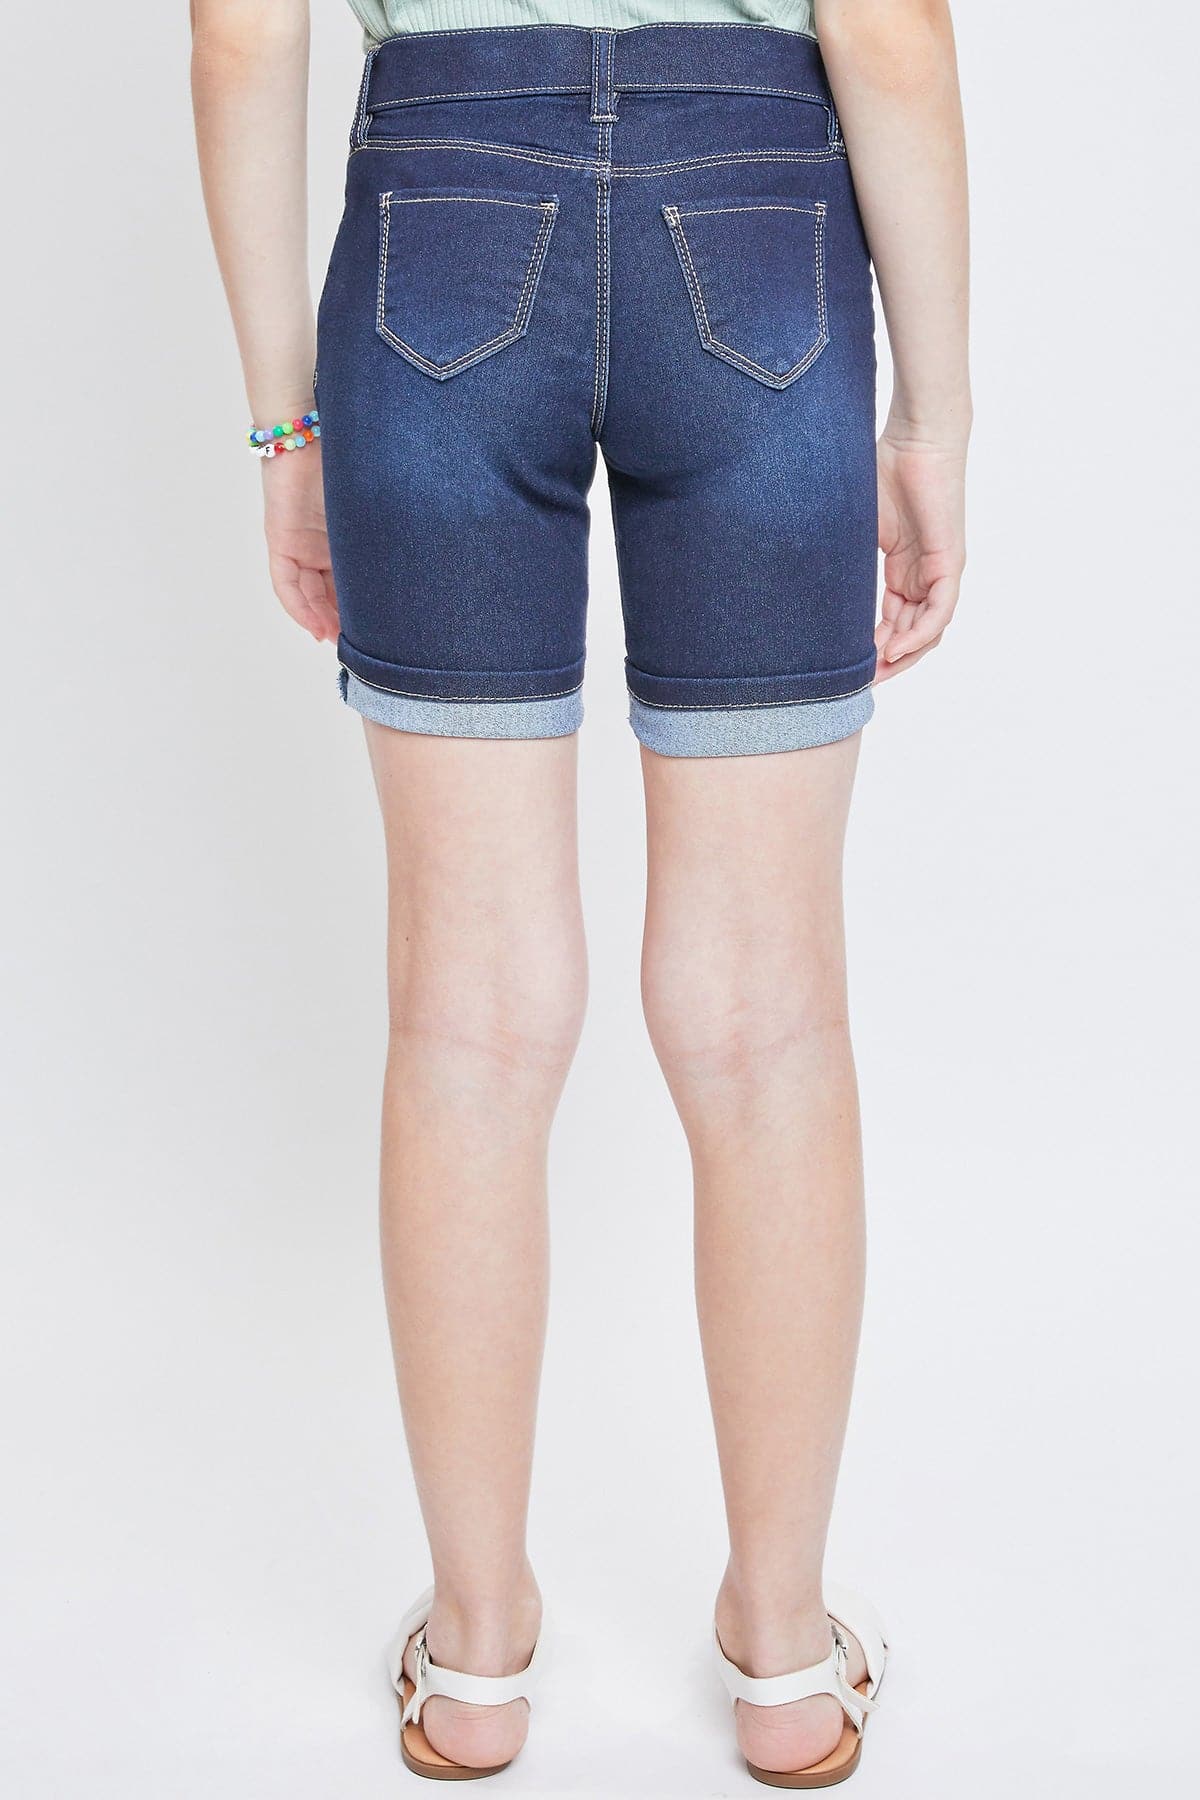 Girls Essential Cuffed Pull On Bermuda Shorts